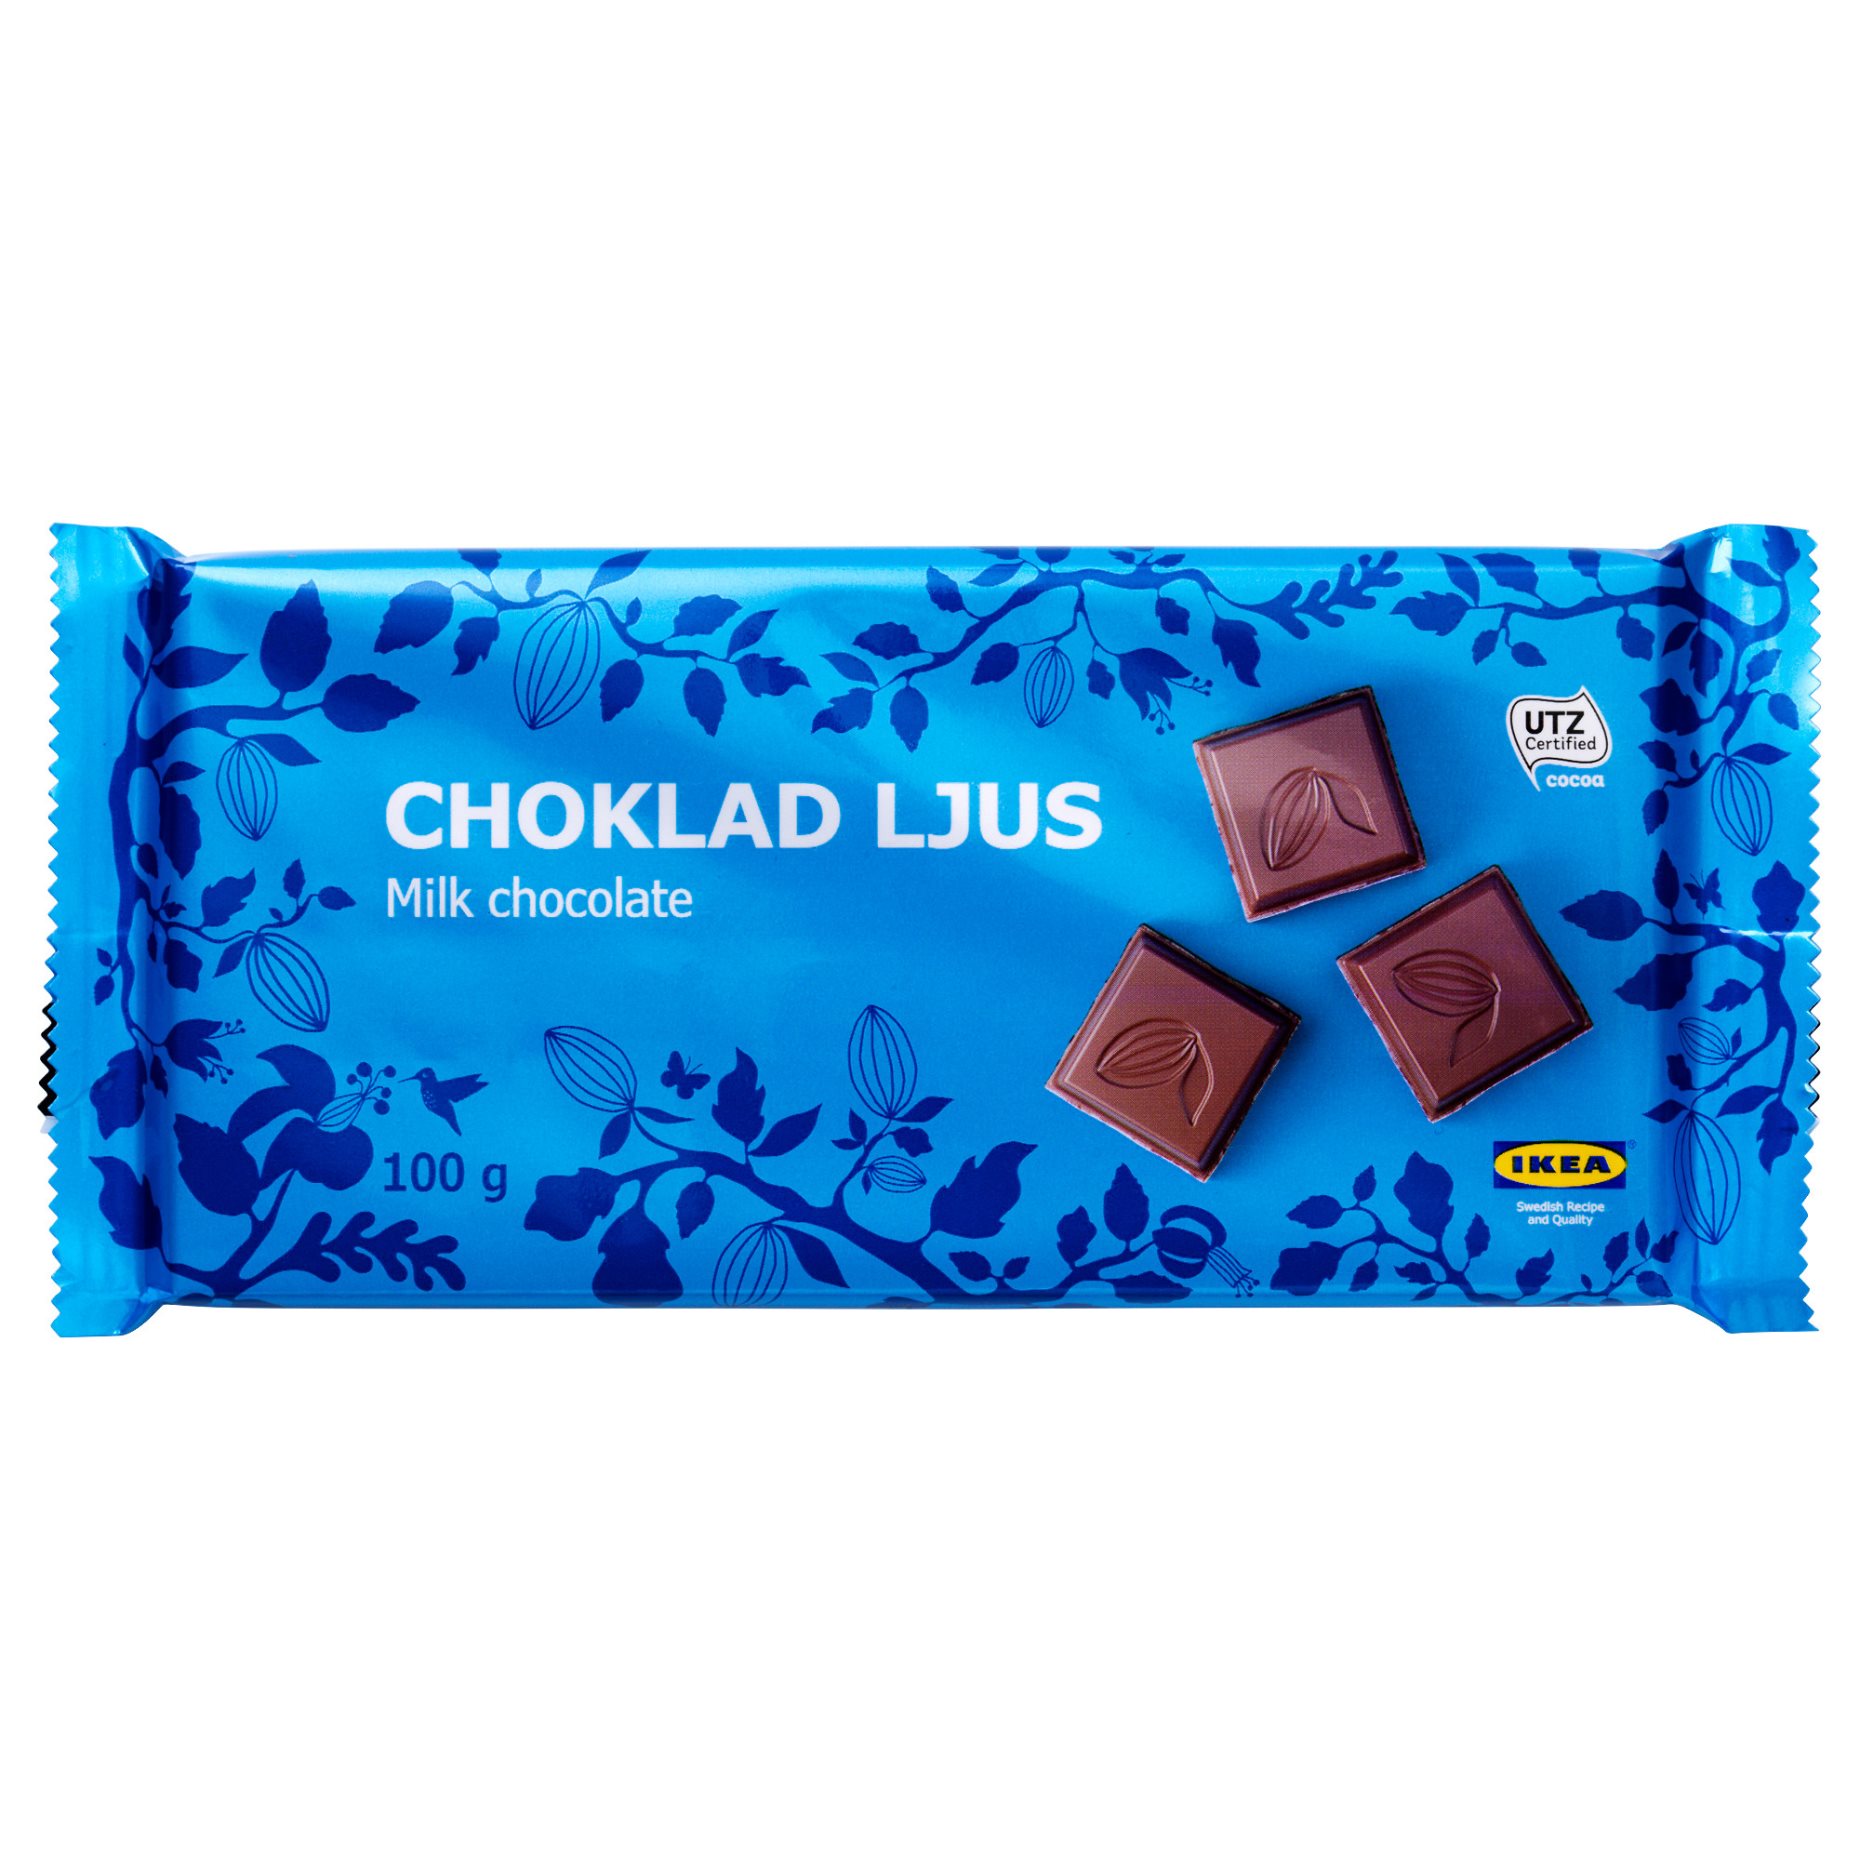 CHOKLAD LJUS, σοκολάτα γάλακτος UTZ, 100 g, 402.939.25